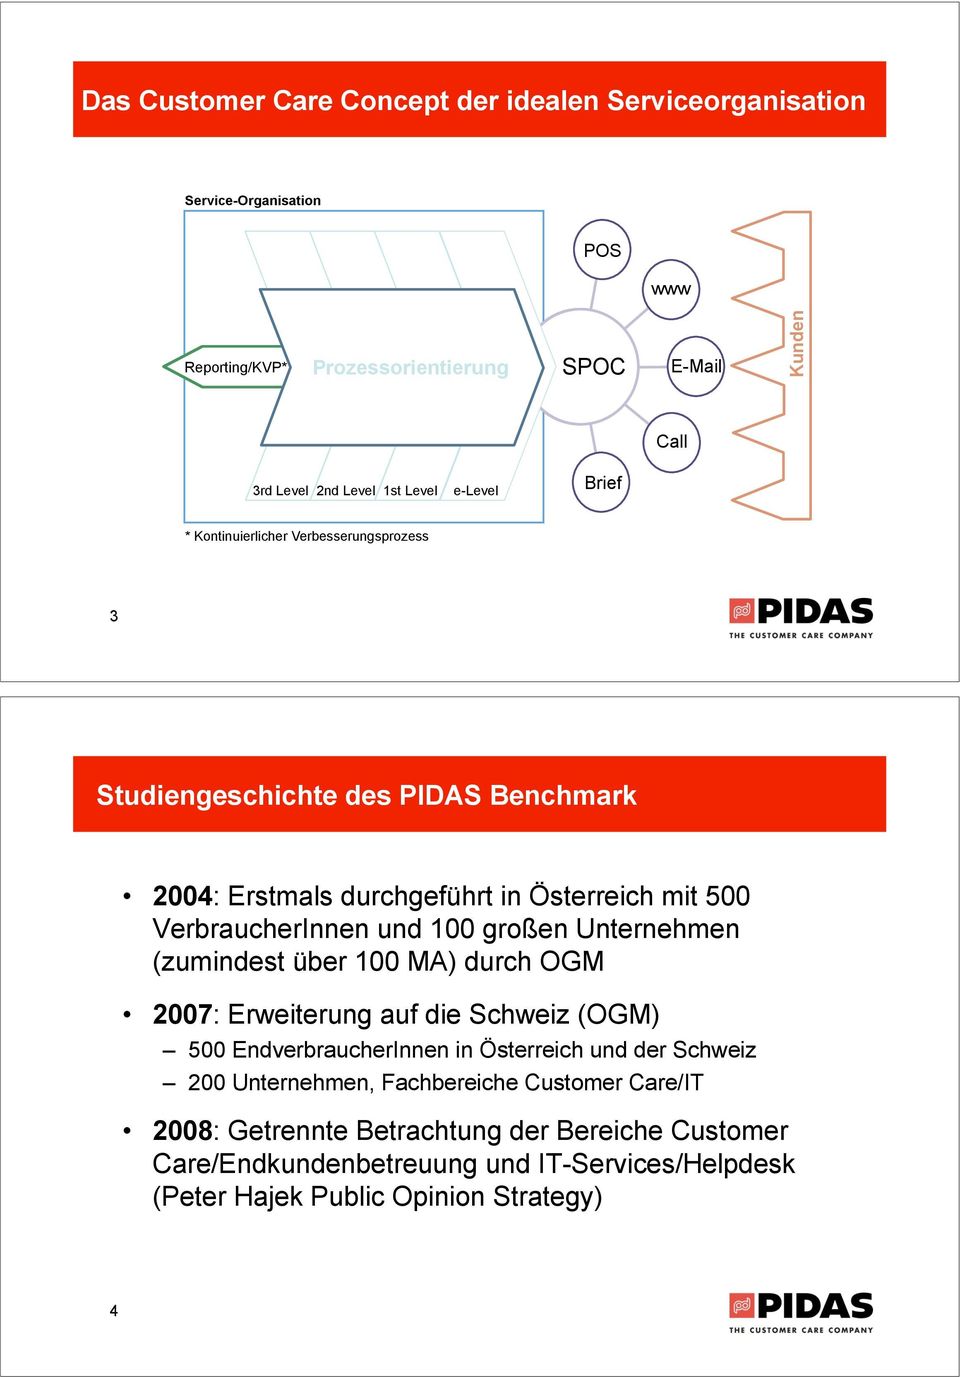 2004: Erstmals durchgeführt in Österreich mit 500 VerbraucherInnen und 100 großen Unternehmen (zumindest über 100 MA) durch OGM! 2007: Erweiterung auf die Schweiz (OGM)!